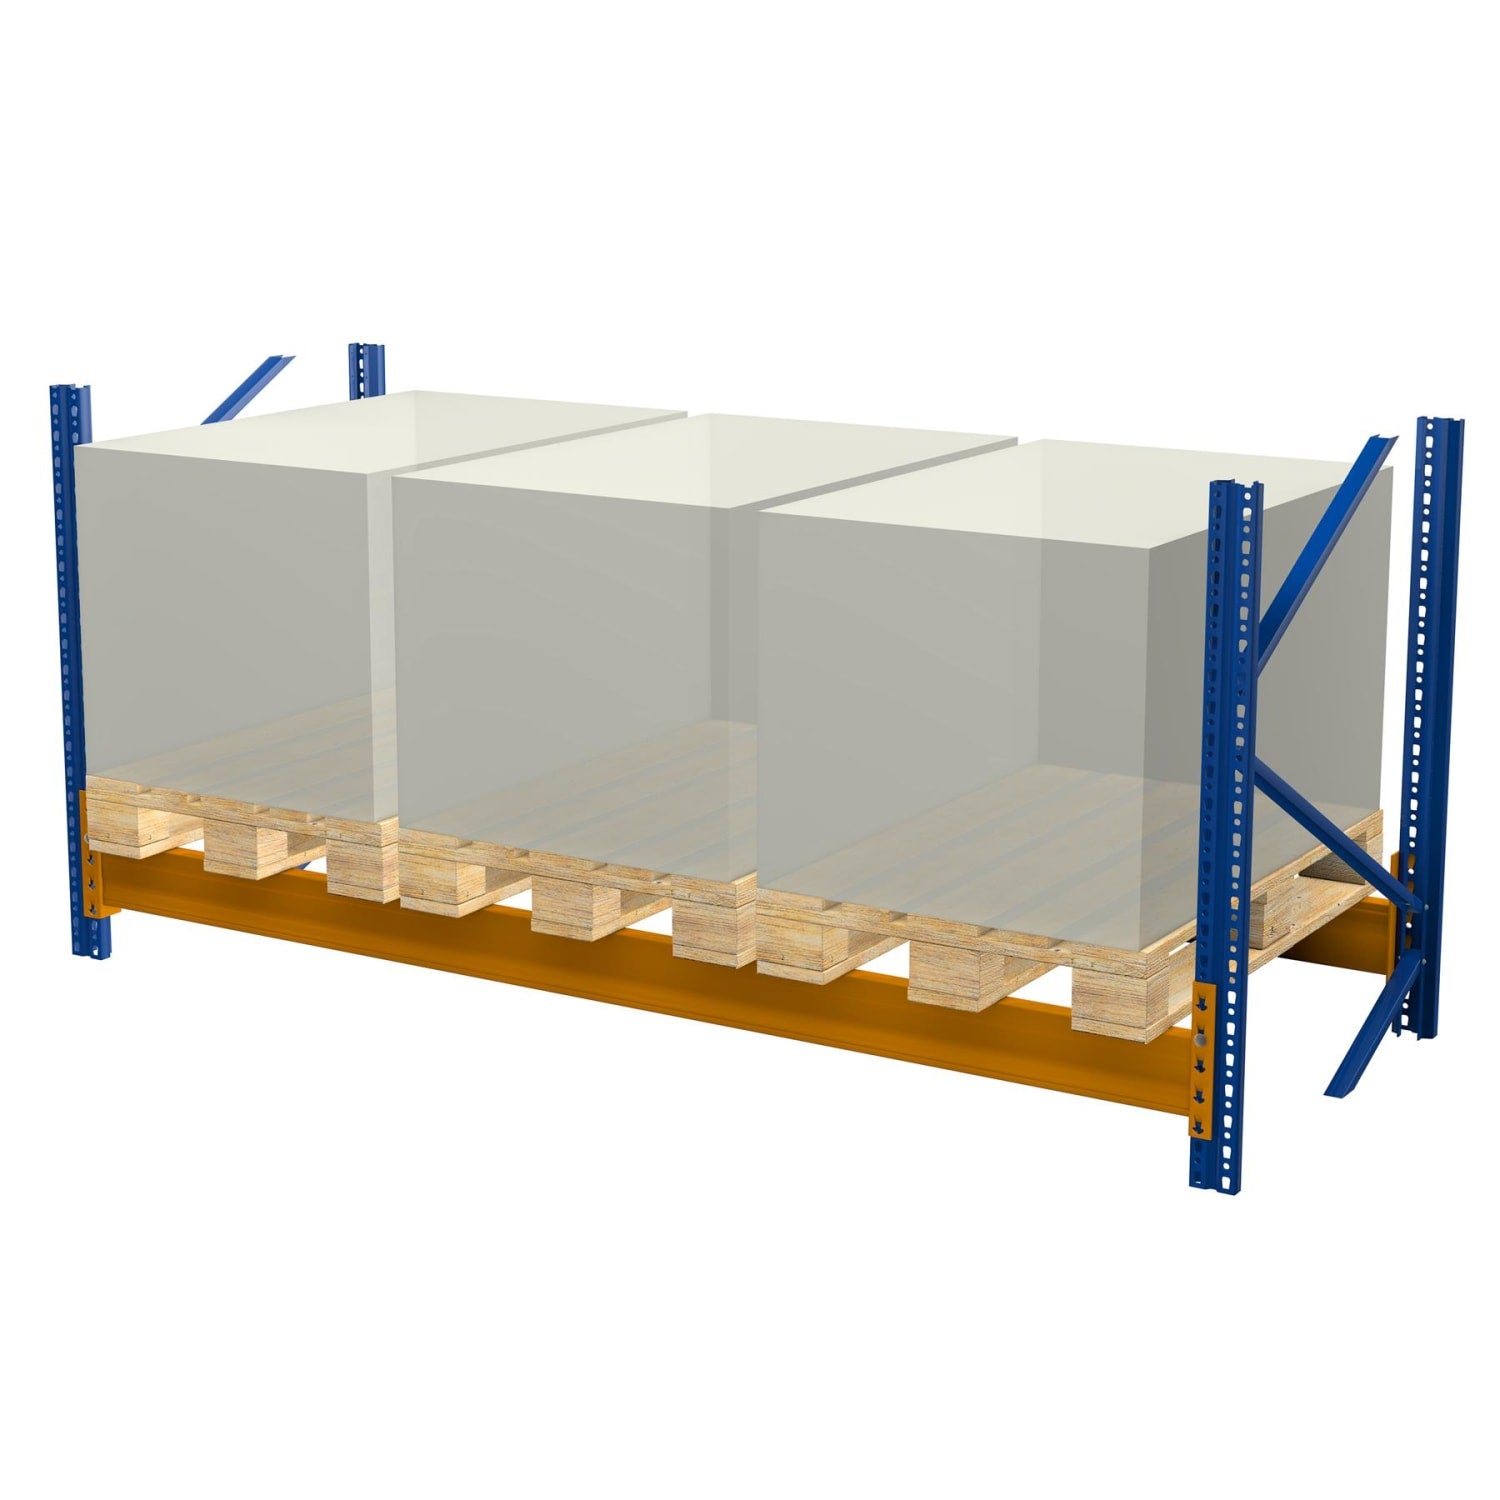 Mini rack à palettes de 2,5 m x 2 m (LxH) avec 2 niveaux pour 6 emplacements